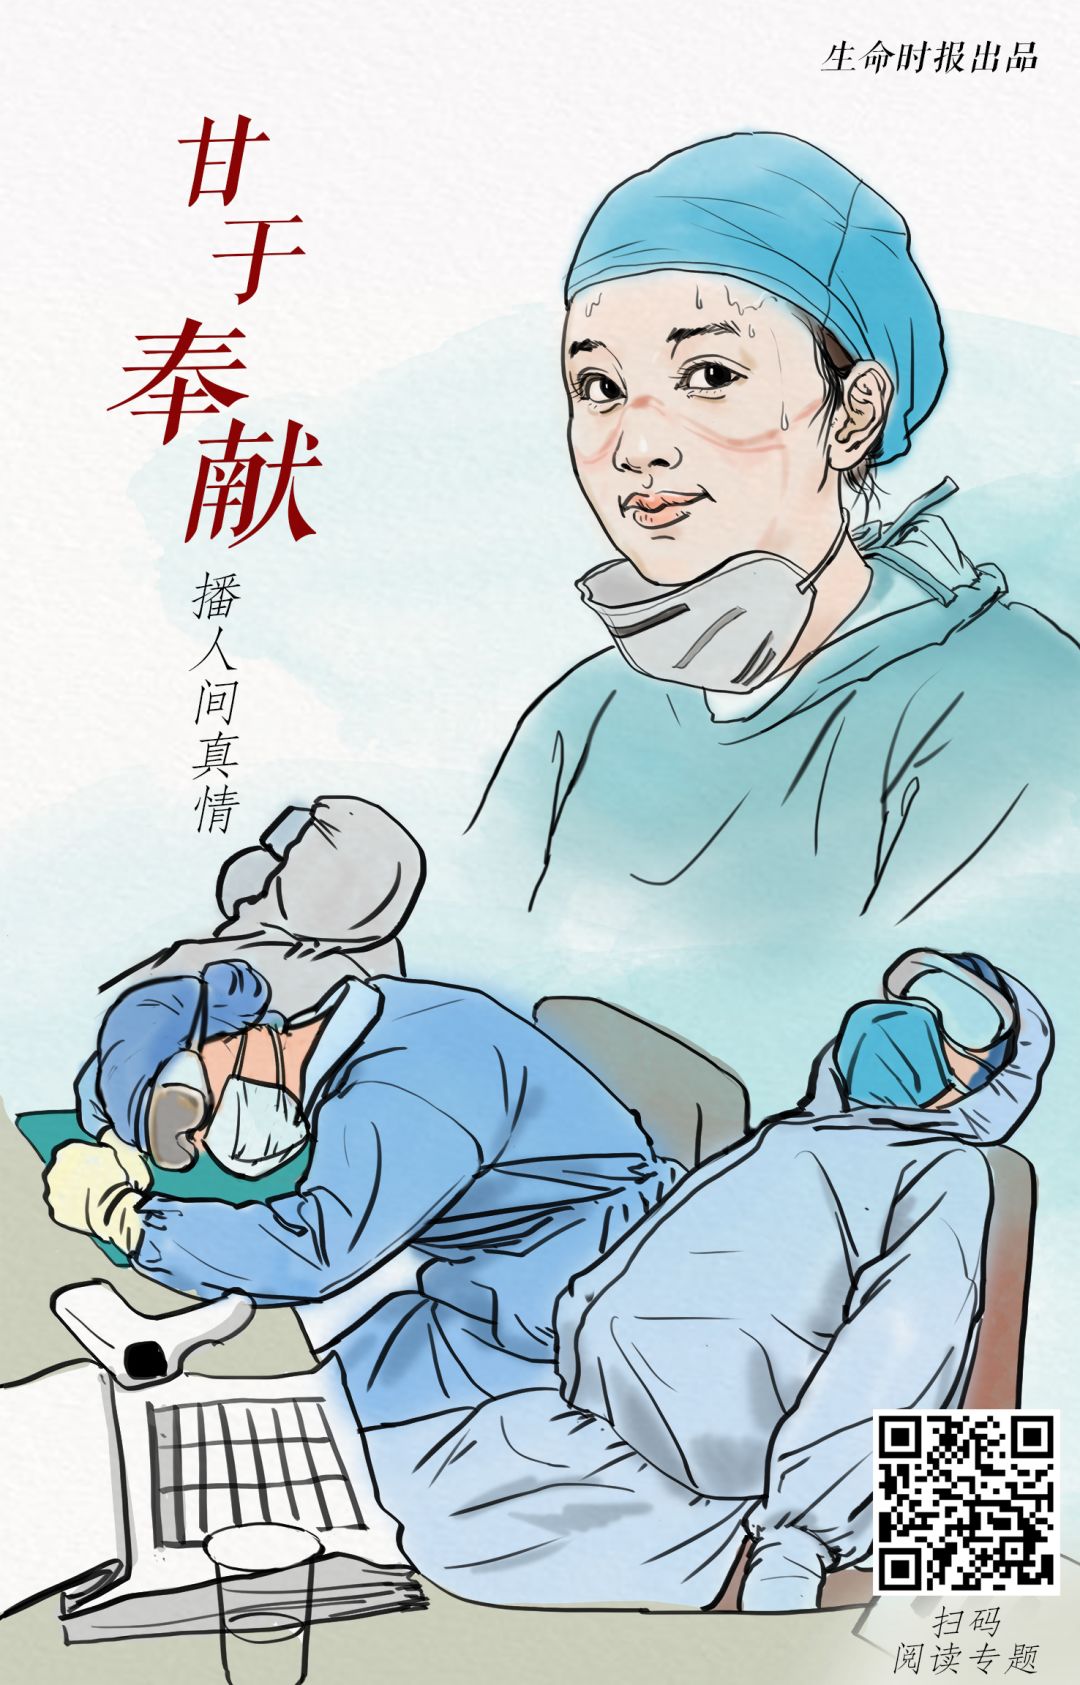 肺炎疫情,广大医务工作者逆流而上奔赴湖北和武汉投入防控救治工作